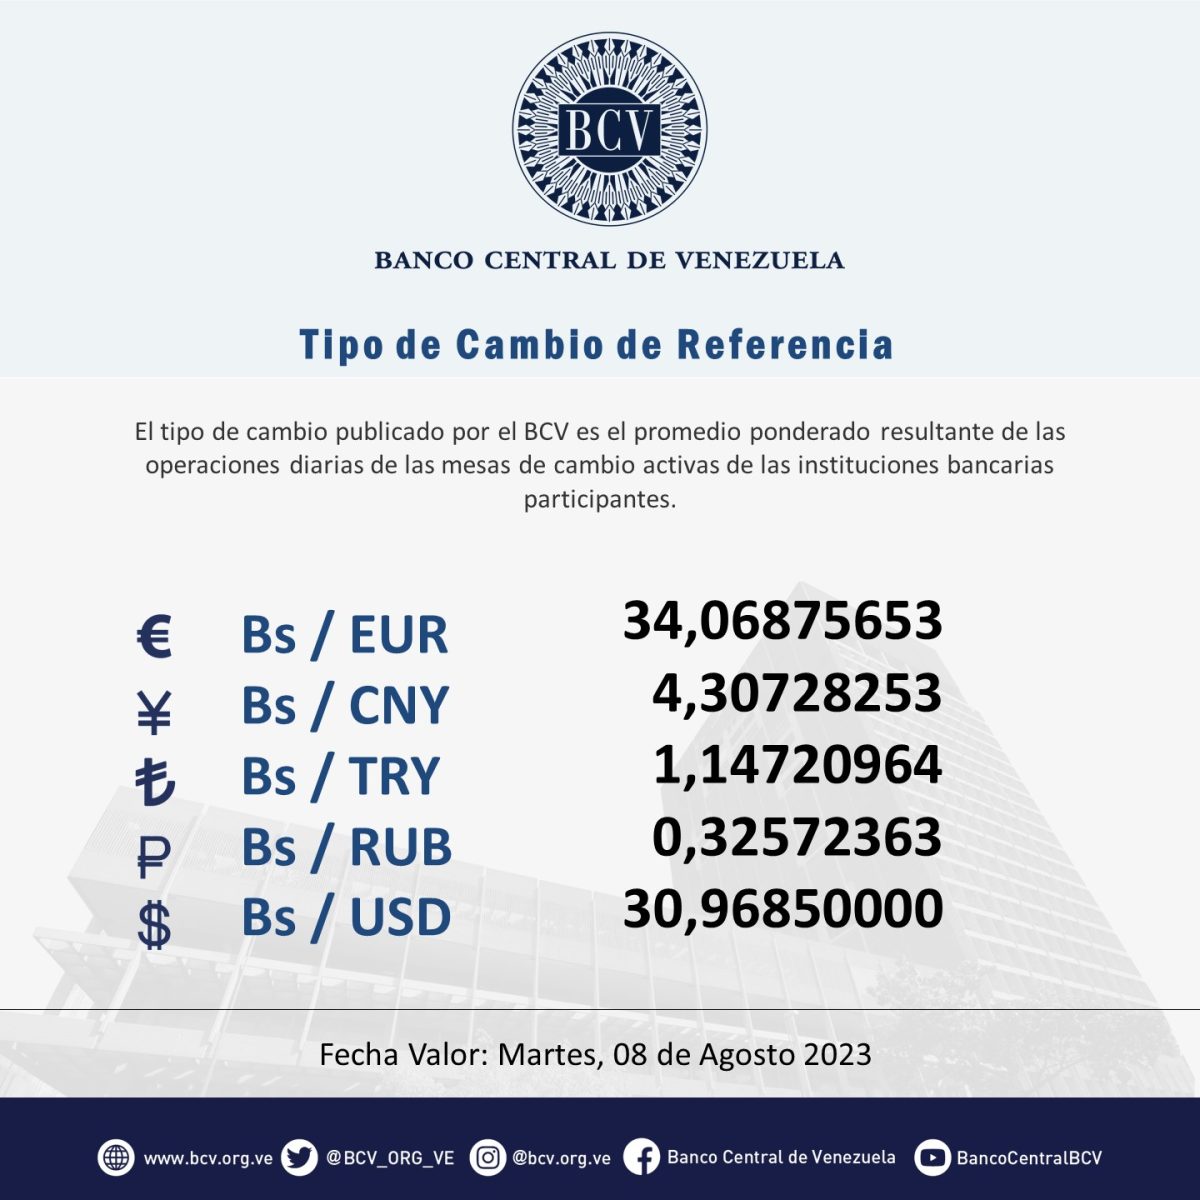 dolartoday en venezuela precio del dolar este lunes 7 de agosto de 2023 laverdaddemonagas.com martes 8 bcv1